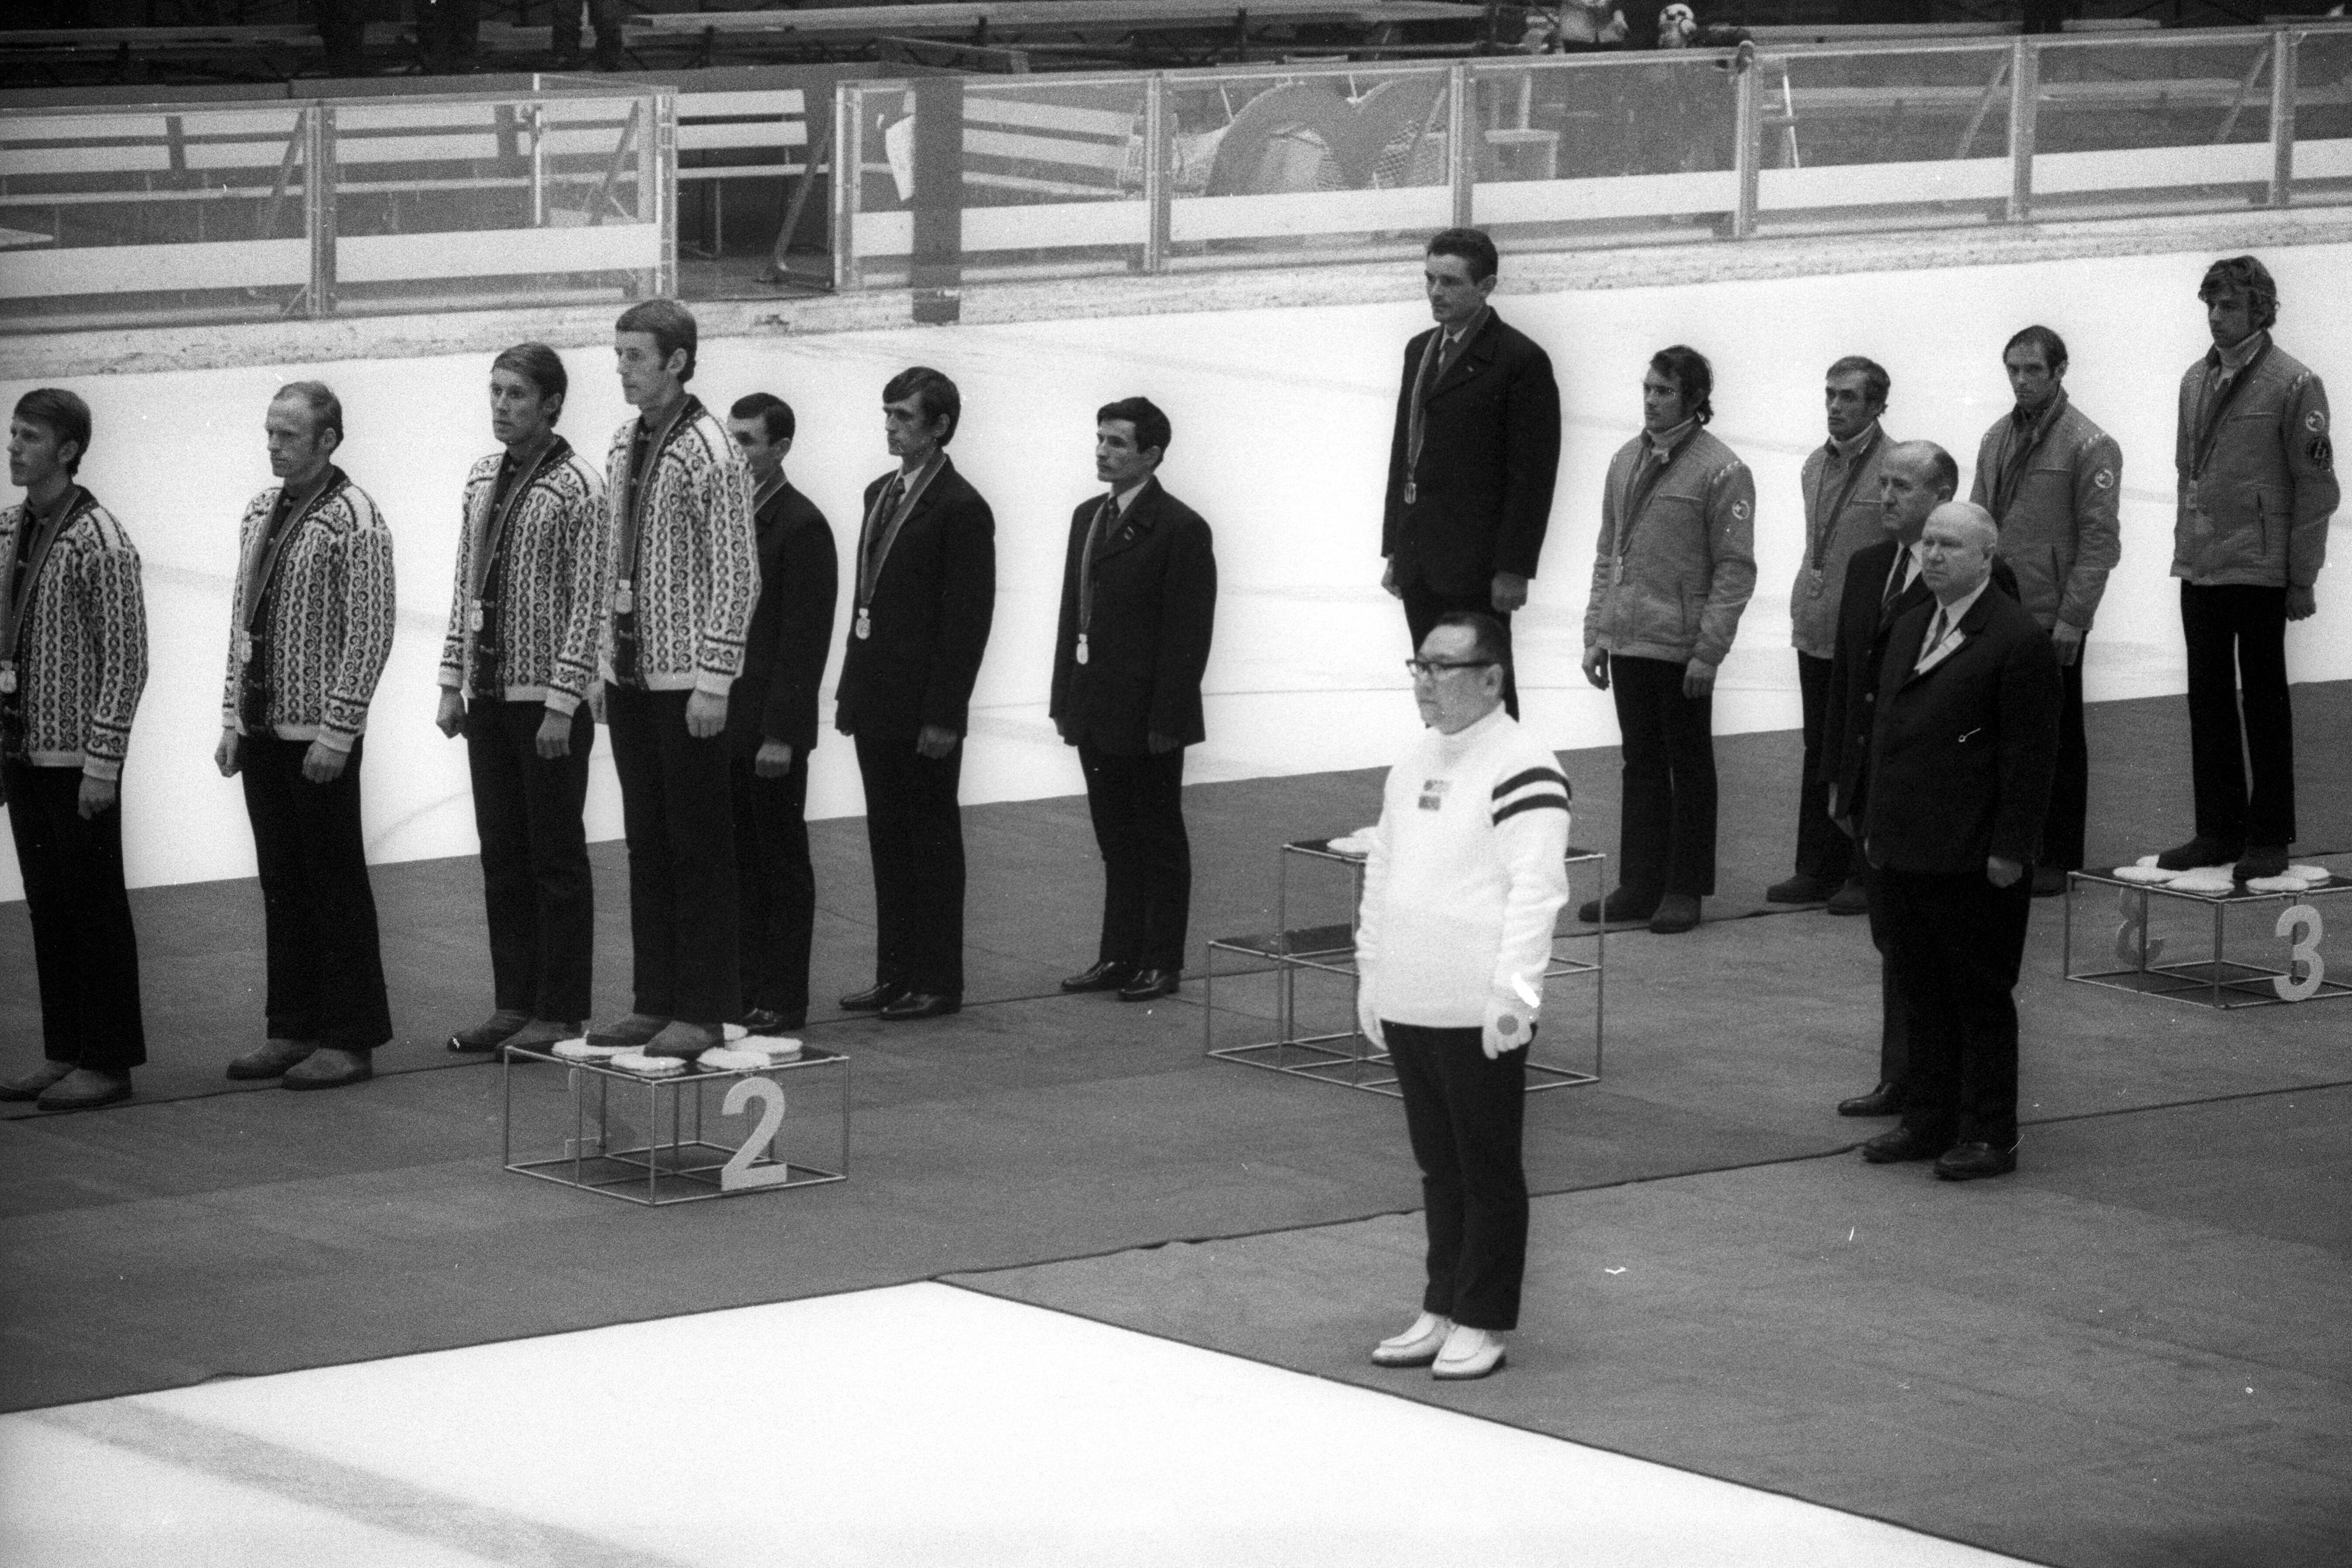 La Suisse (droite) sur la 3e marche du podium le 13 février 1972 à Sapporo. [Imago - Werek]